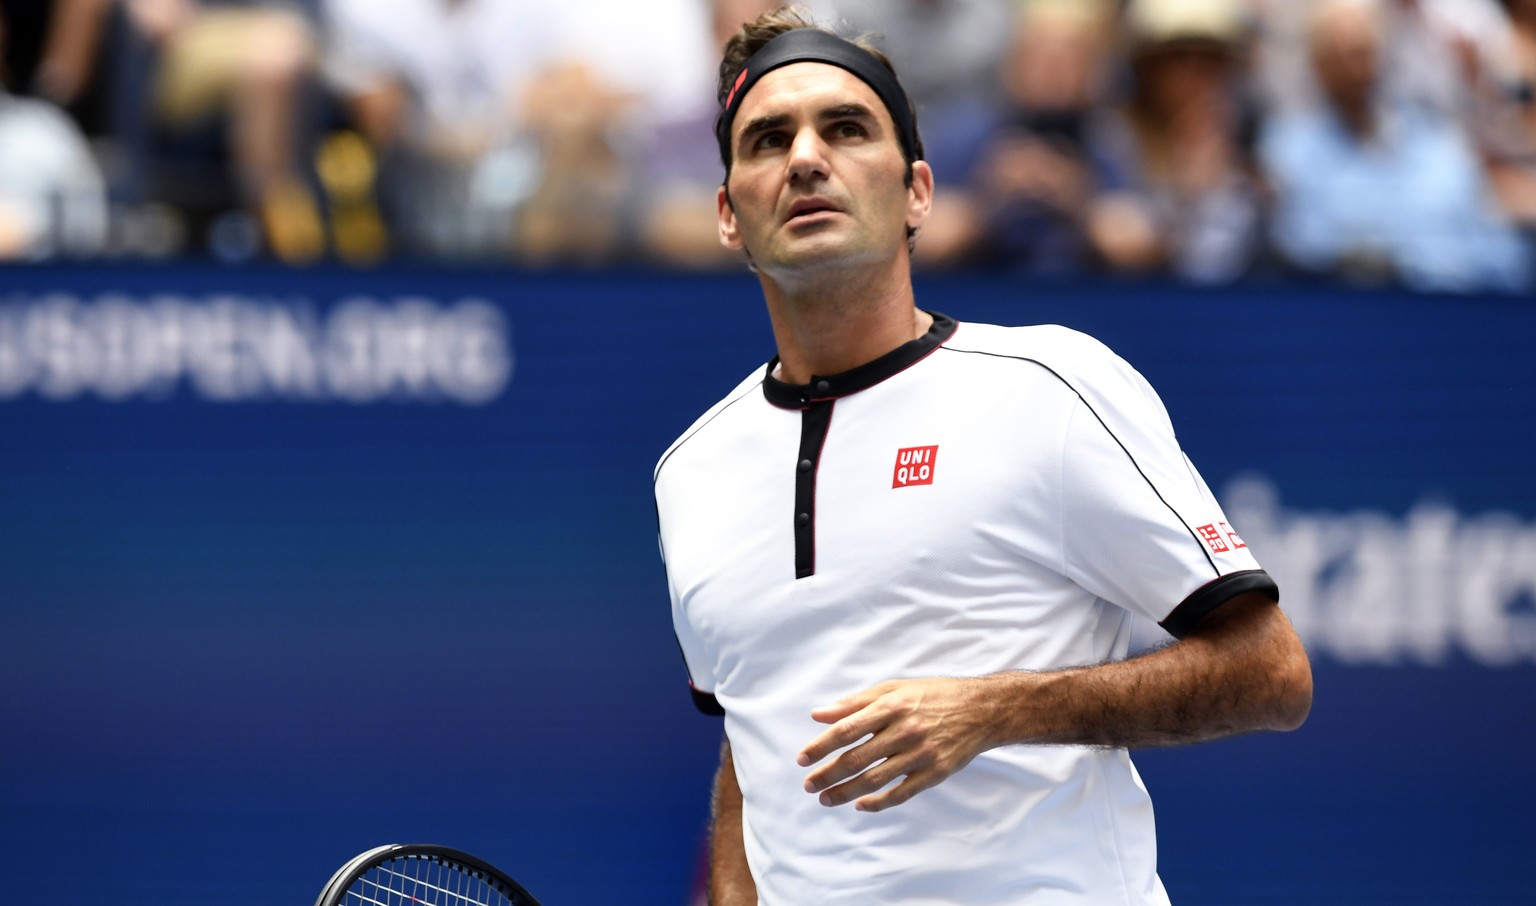 Federer spielt schmerzfrei und hat deshalb Lust auf mehr.